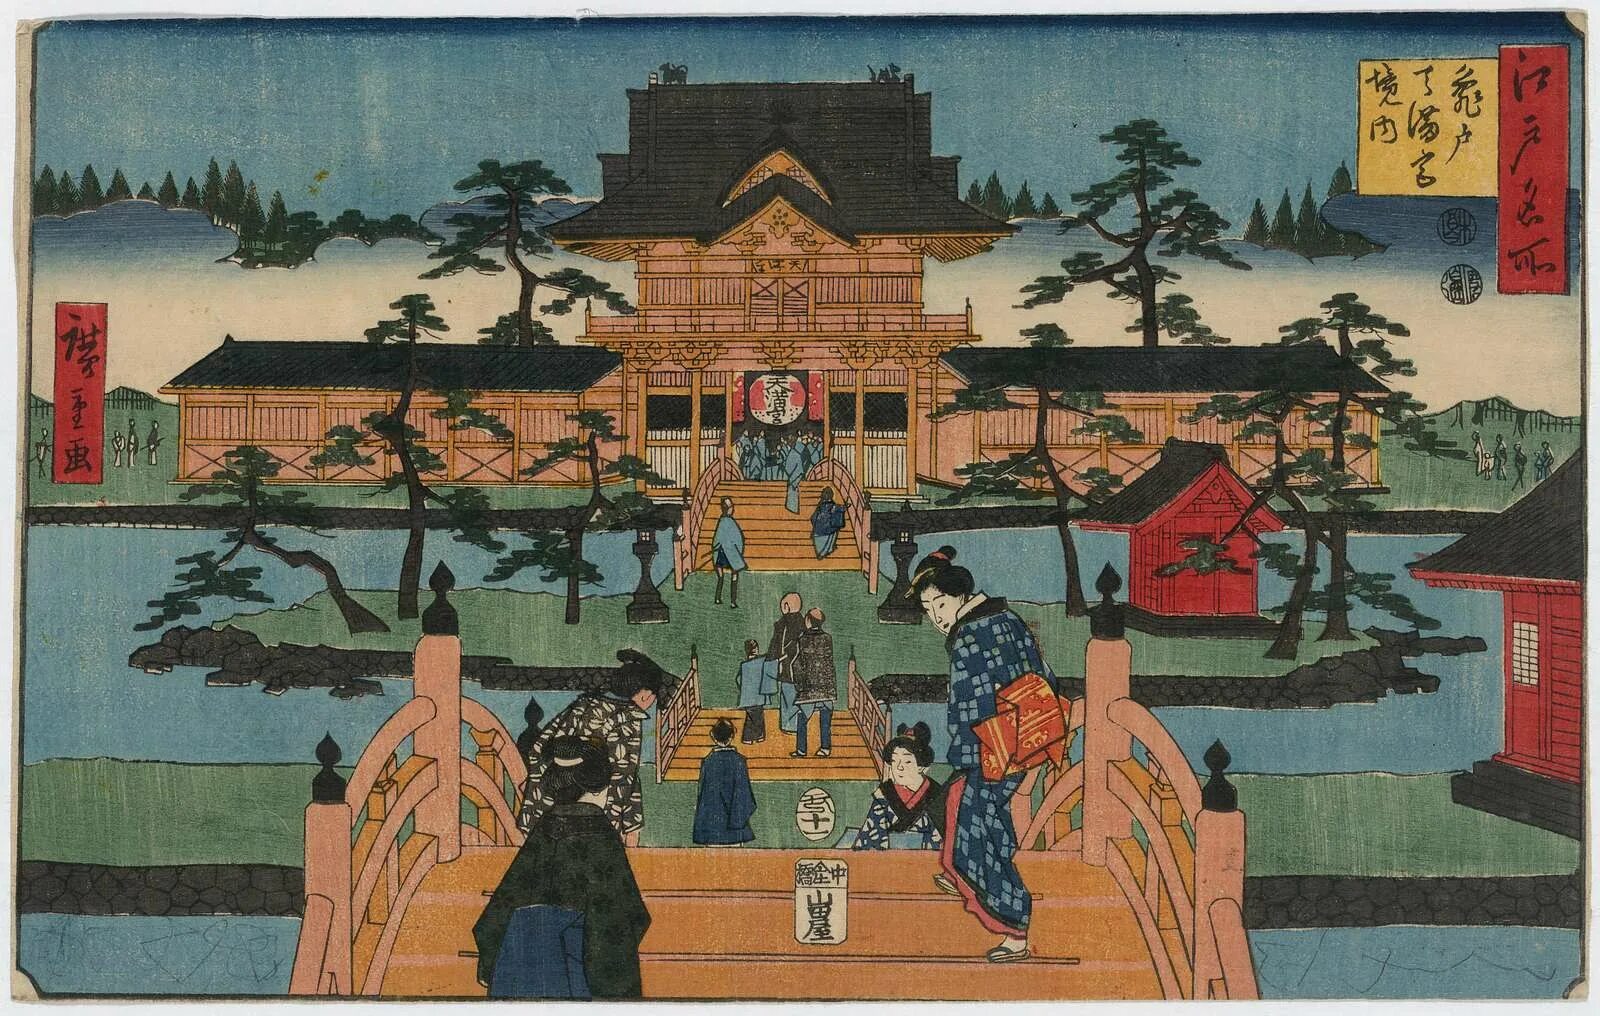 Япония 8 века. Сёгунат Токугава. Период Эдо. Япония 1603-1868. Япония эпоха Эдо гравюра. Токугава (Эдо): гравюра.